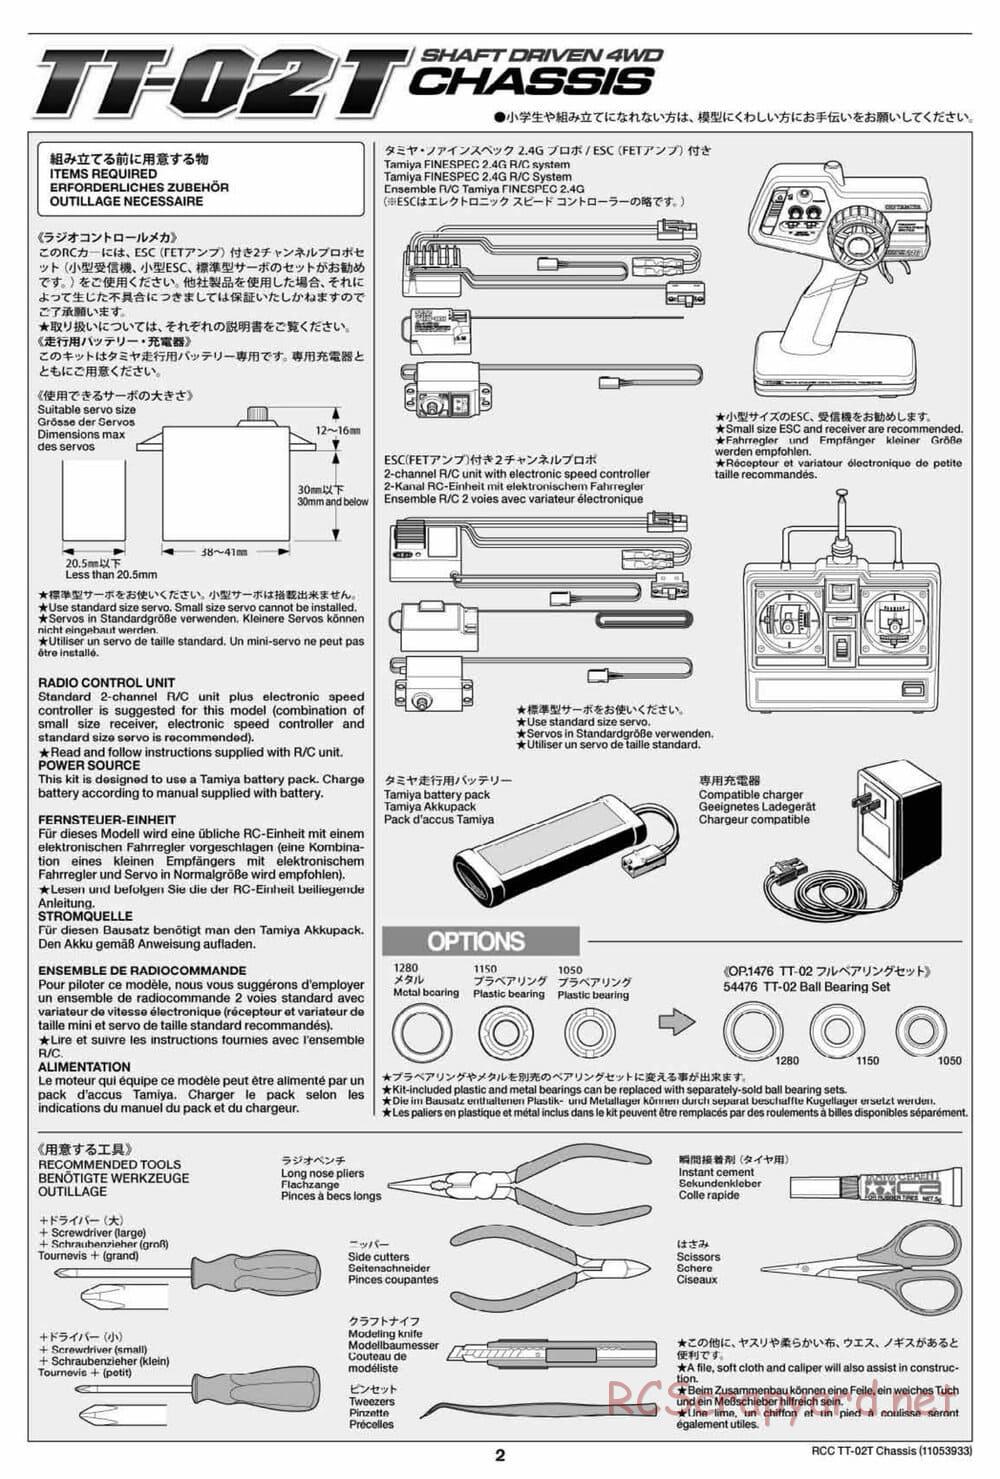 Tamiya - TT-02T Chassis - Manual - Page 3